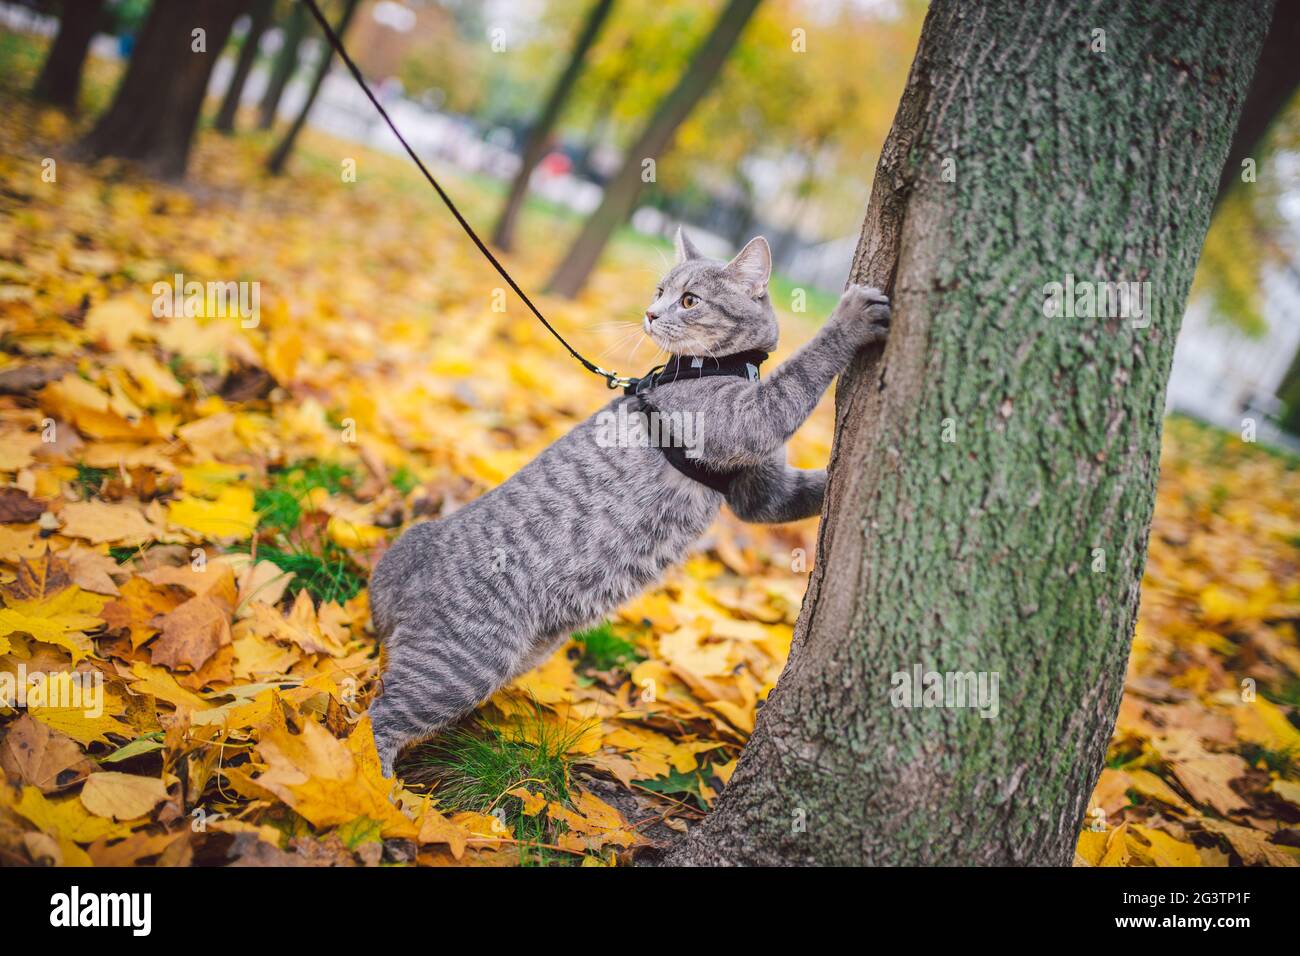 Männliche Katze inländischen grauen Wolle Streifen junge gute Form, gekleidete Katze Leine Geschirr klettert einen Baum für die Jagd Vogel, aufmerksam konzentriert Stockfoto